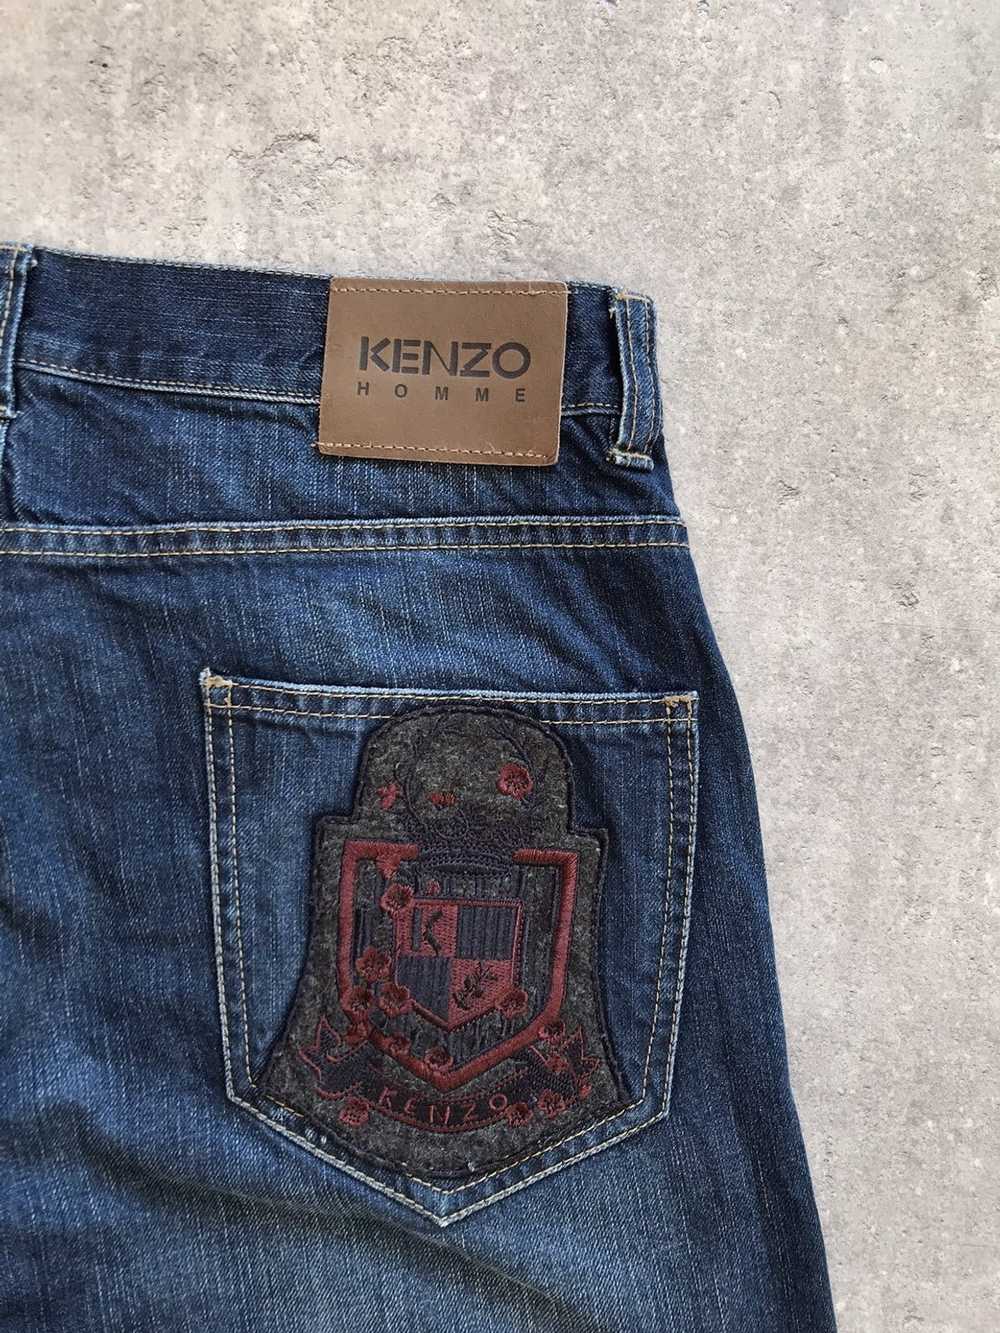 Japanese Brand × Kenzo × Vintage Kenzo Homme Patc… - image 3